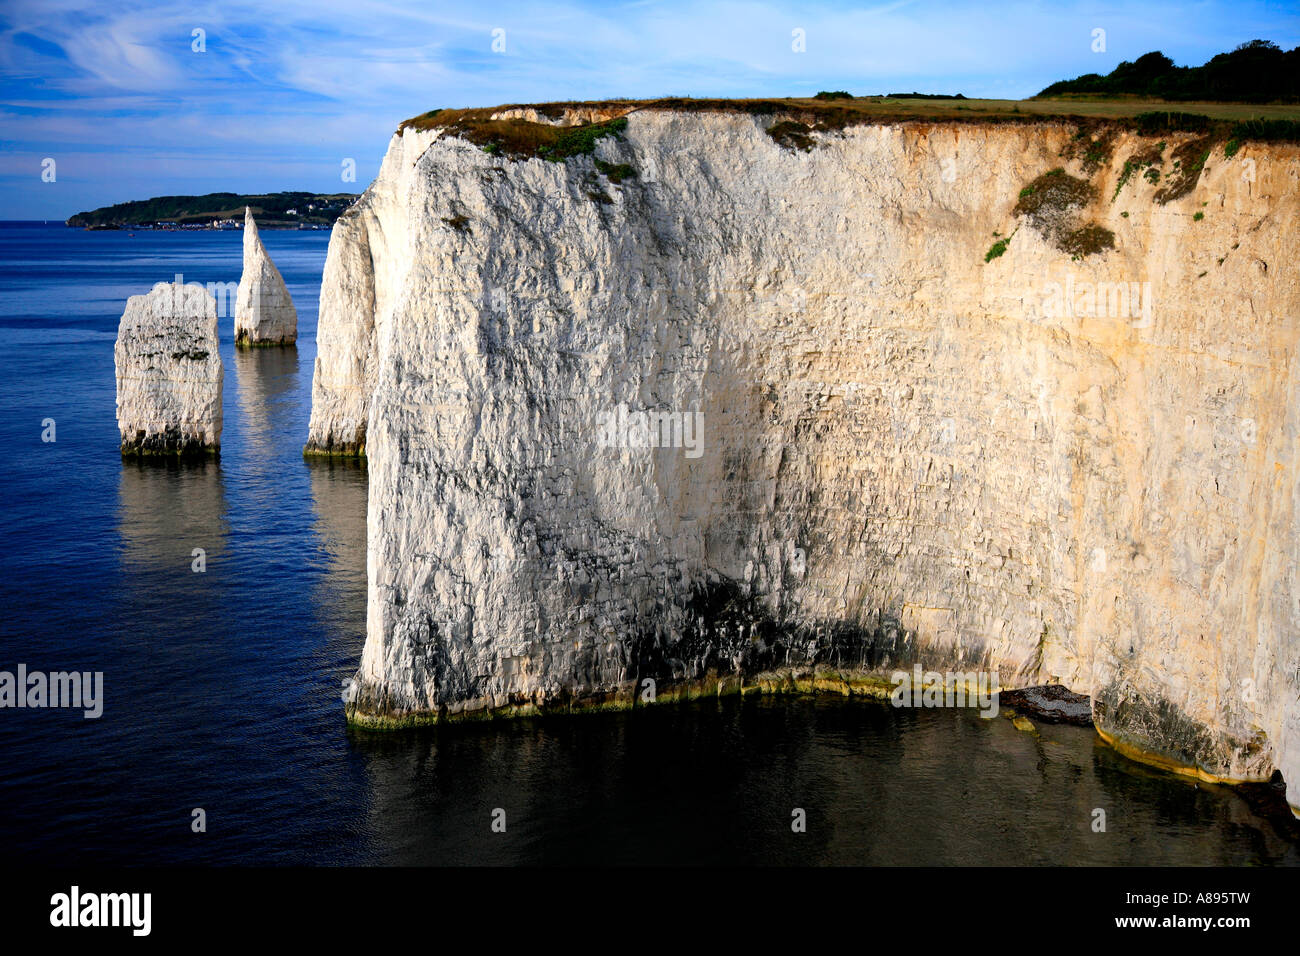 Los pináculos Mar apila Swanage Bay costa Jurásica Dorset, Inglaterra Gran Bretaña UK Foto de stock